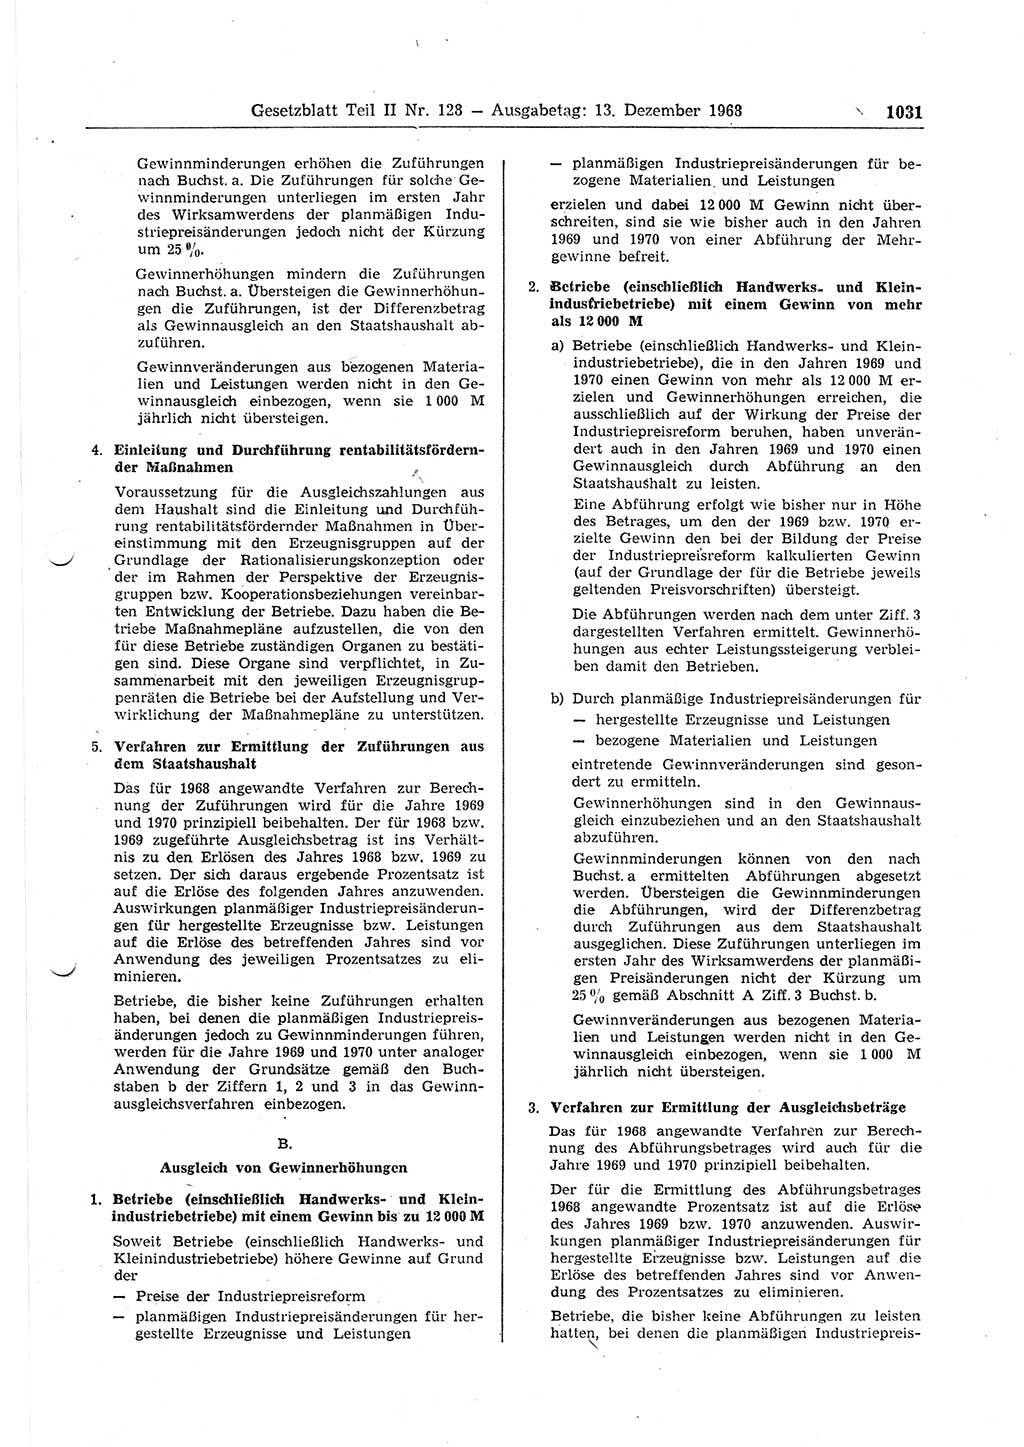 Gesetzblatt (GBl.) der Deutschen Demokratischen Republik (DDR) Teil ⅠⅠ 1968, Seite 1031 (GBl. DDR ⅠⅠ 1968, S. 1031)